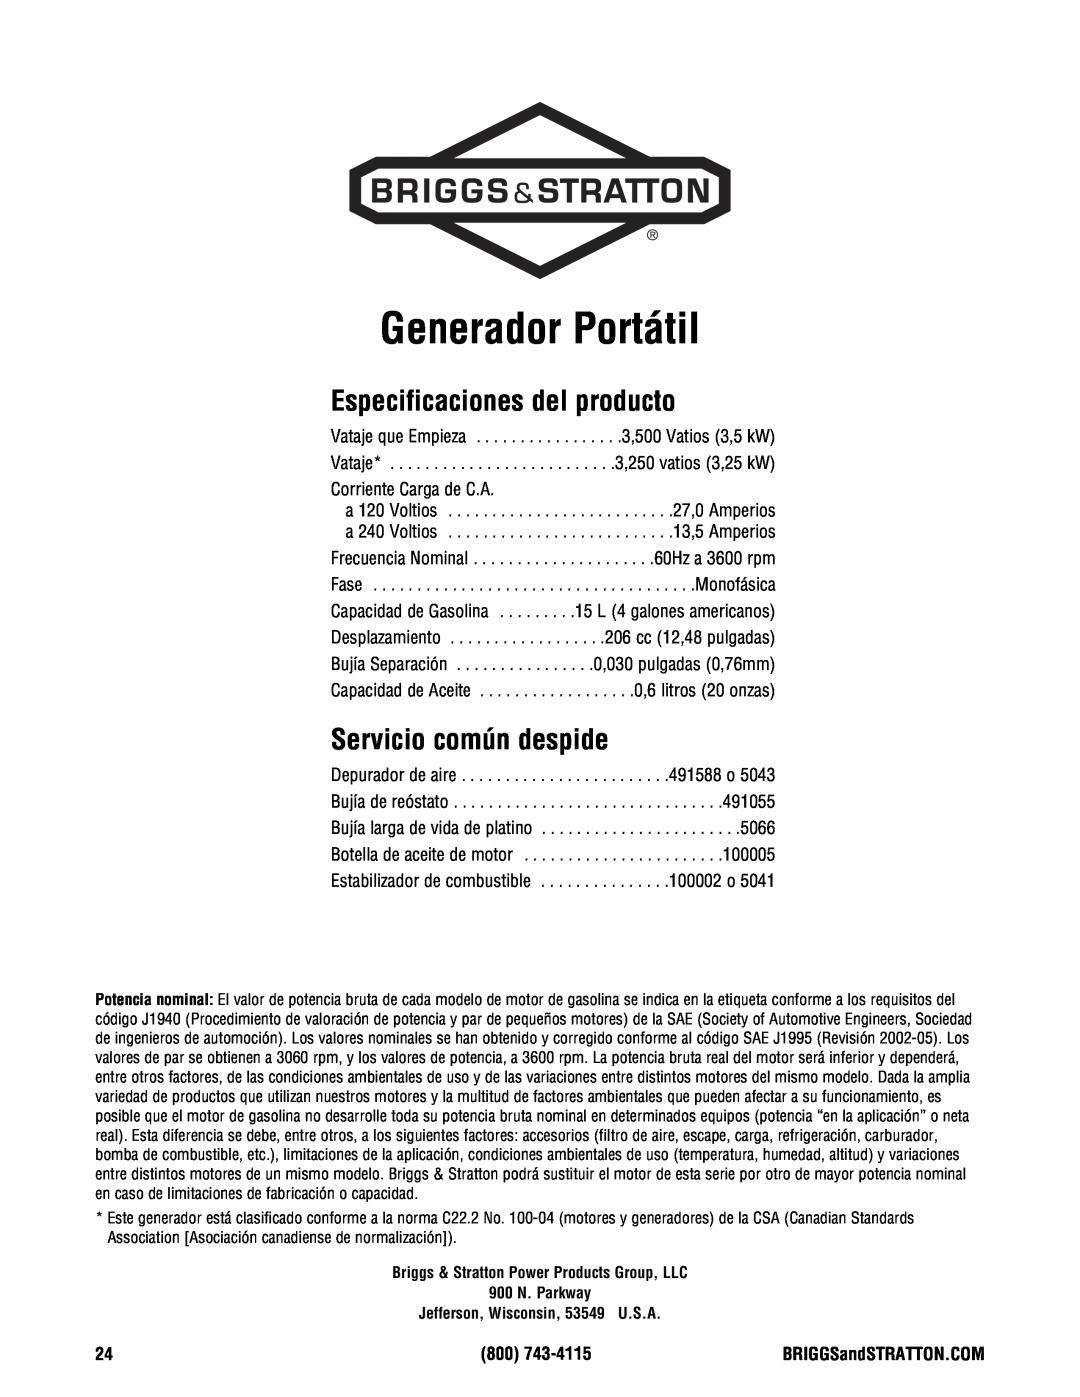 Briggs & Stratton 209443gs manual Especificaciones del producto, Servicio común despide, Generador Portátil 